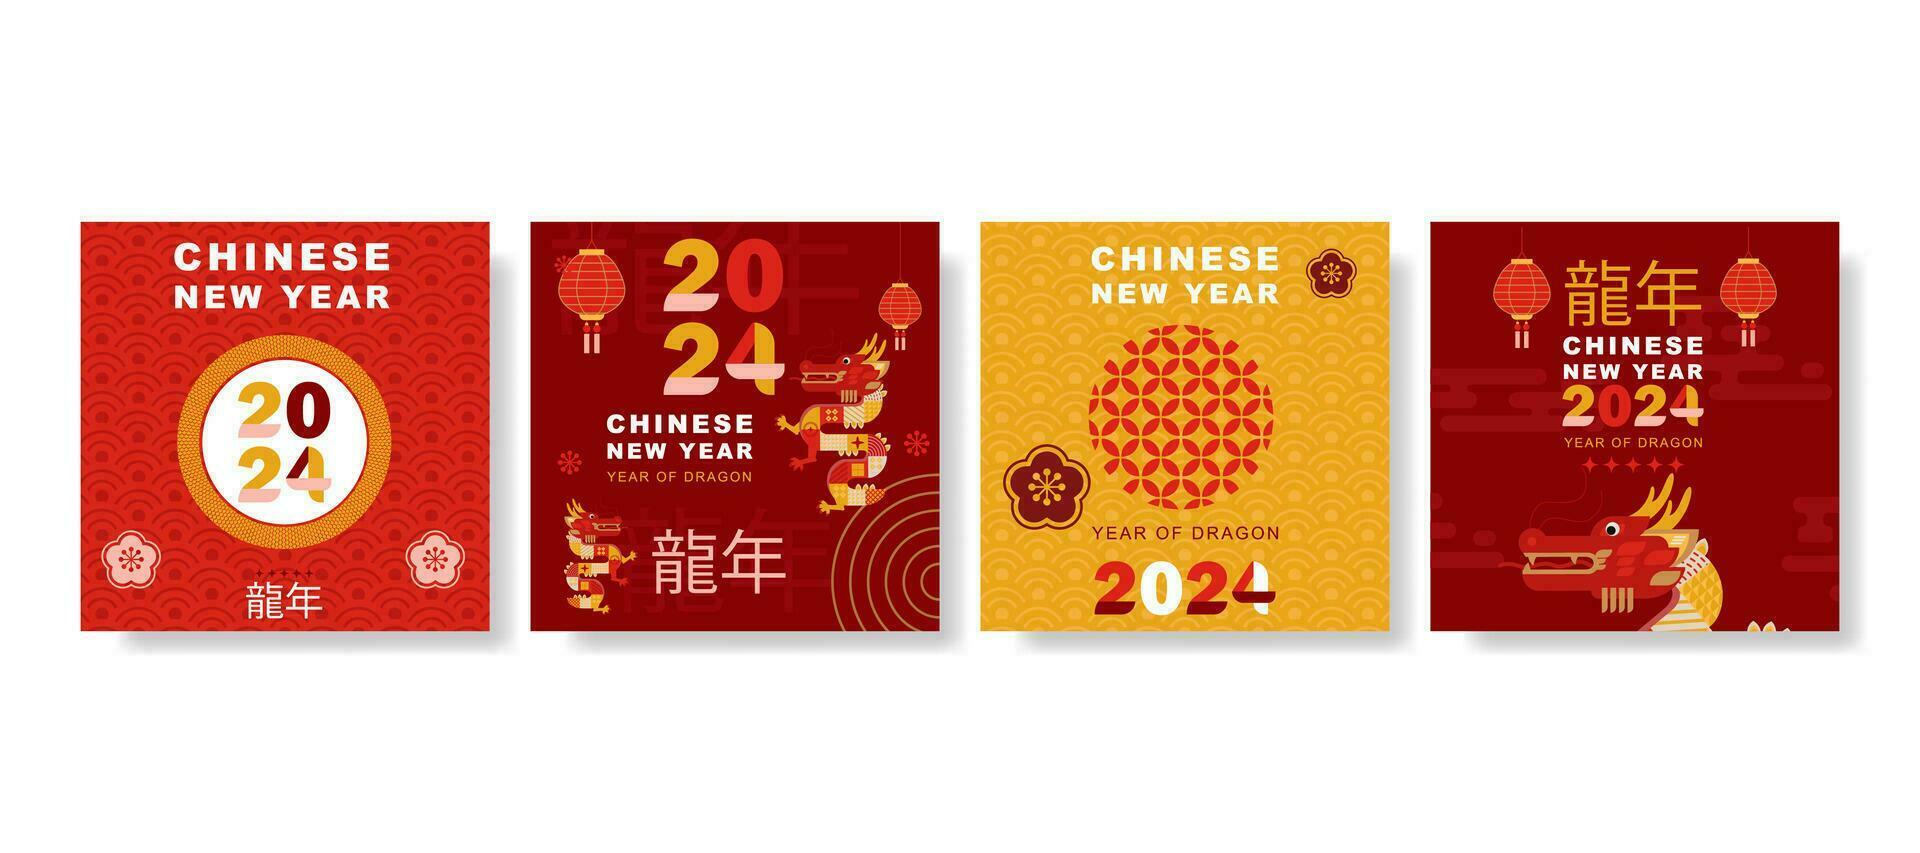 moderno Arte chino nuevo año 2024 diseño conjunto para social medios de comunicación correo, cubrir, tarjeta, póster, bandera. vector